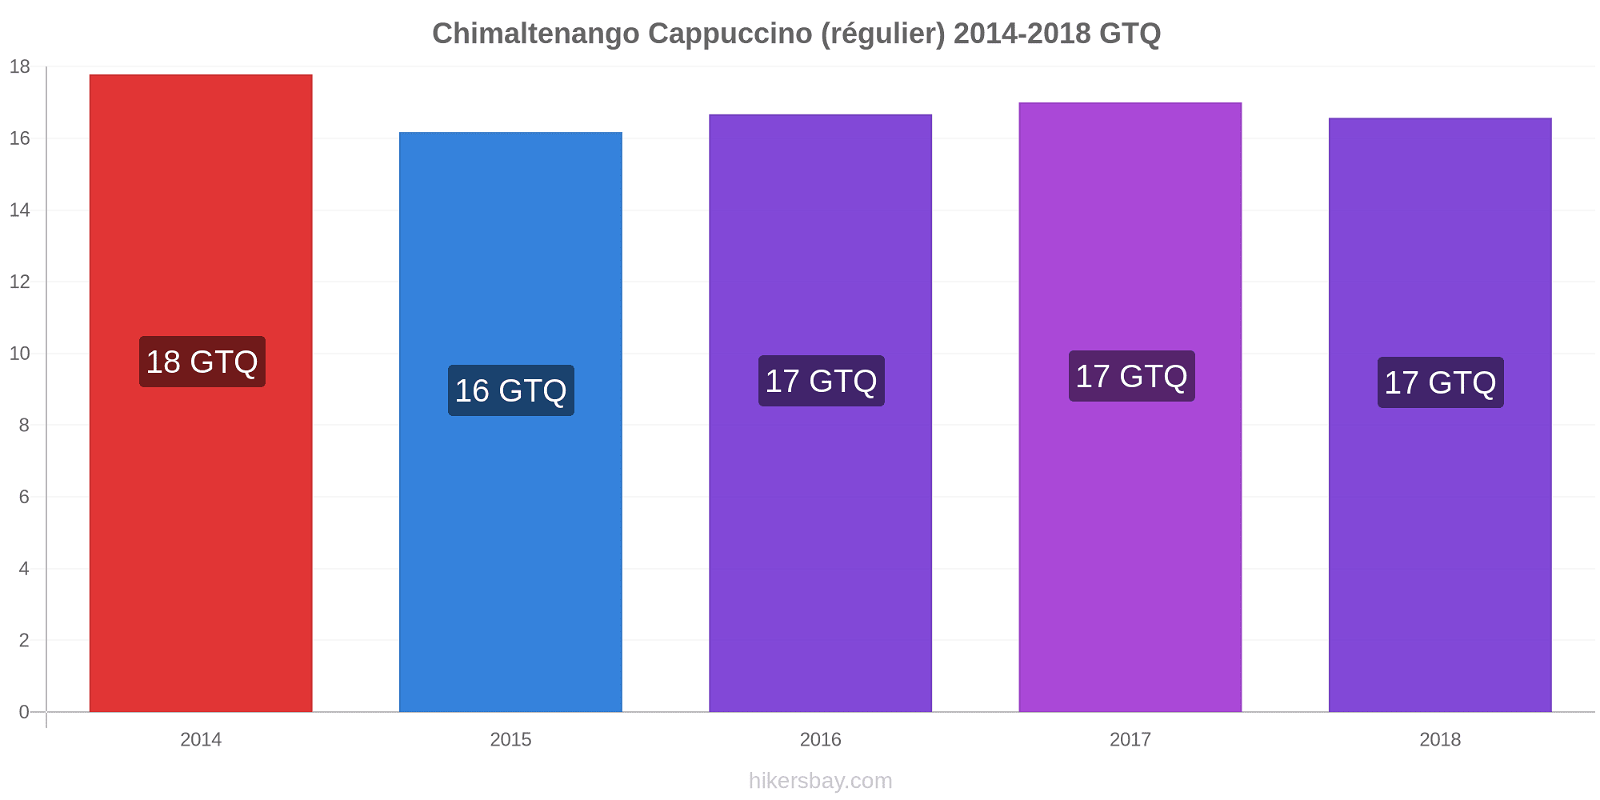 Chimaltenango changements de prix Cappuccino (régulier) hikersbay.com